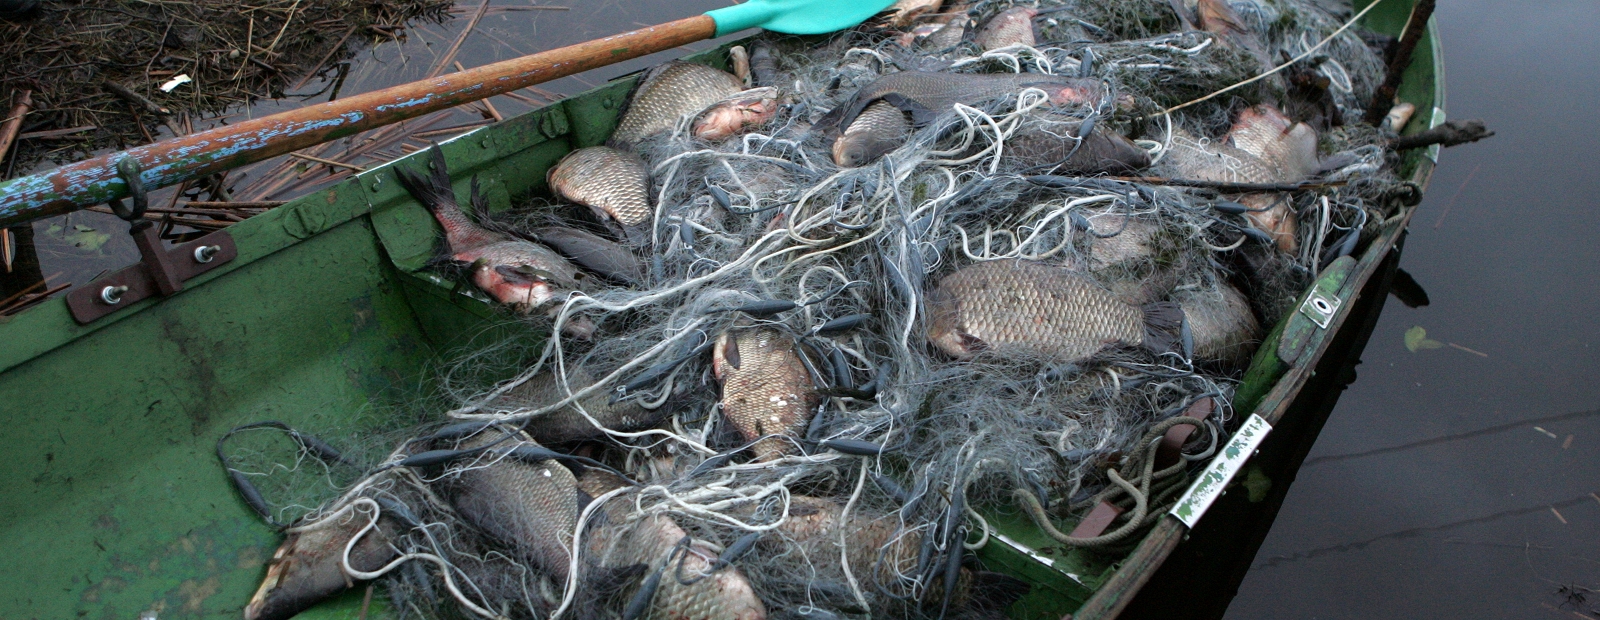 Лов рыбы сетью. Рыболовное браконьерство. Браконьерская рыбалка сетями.